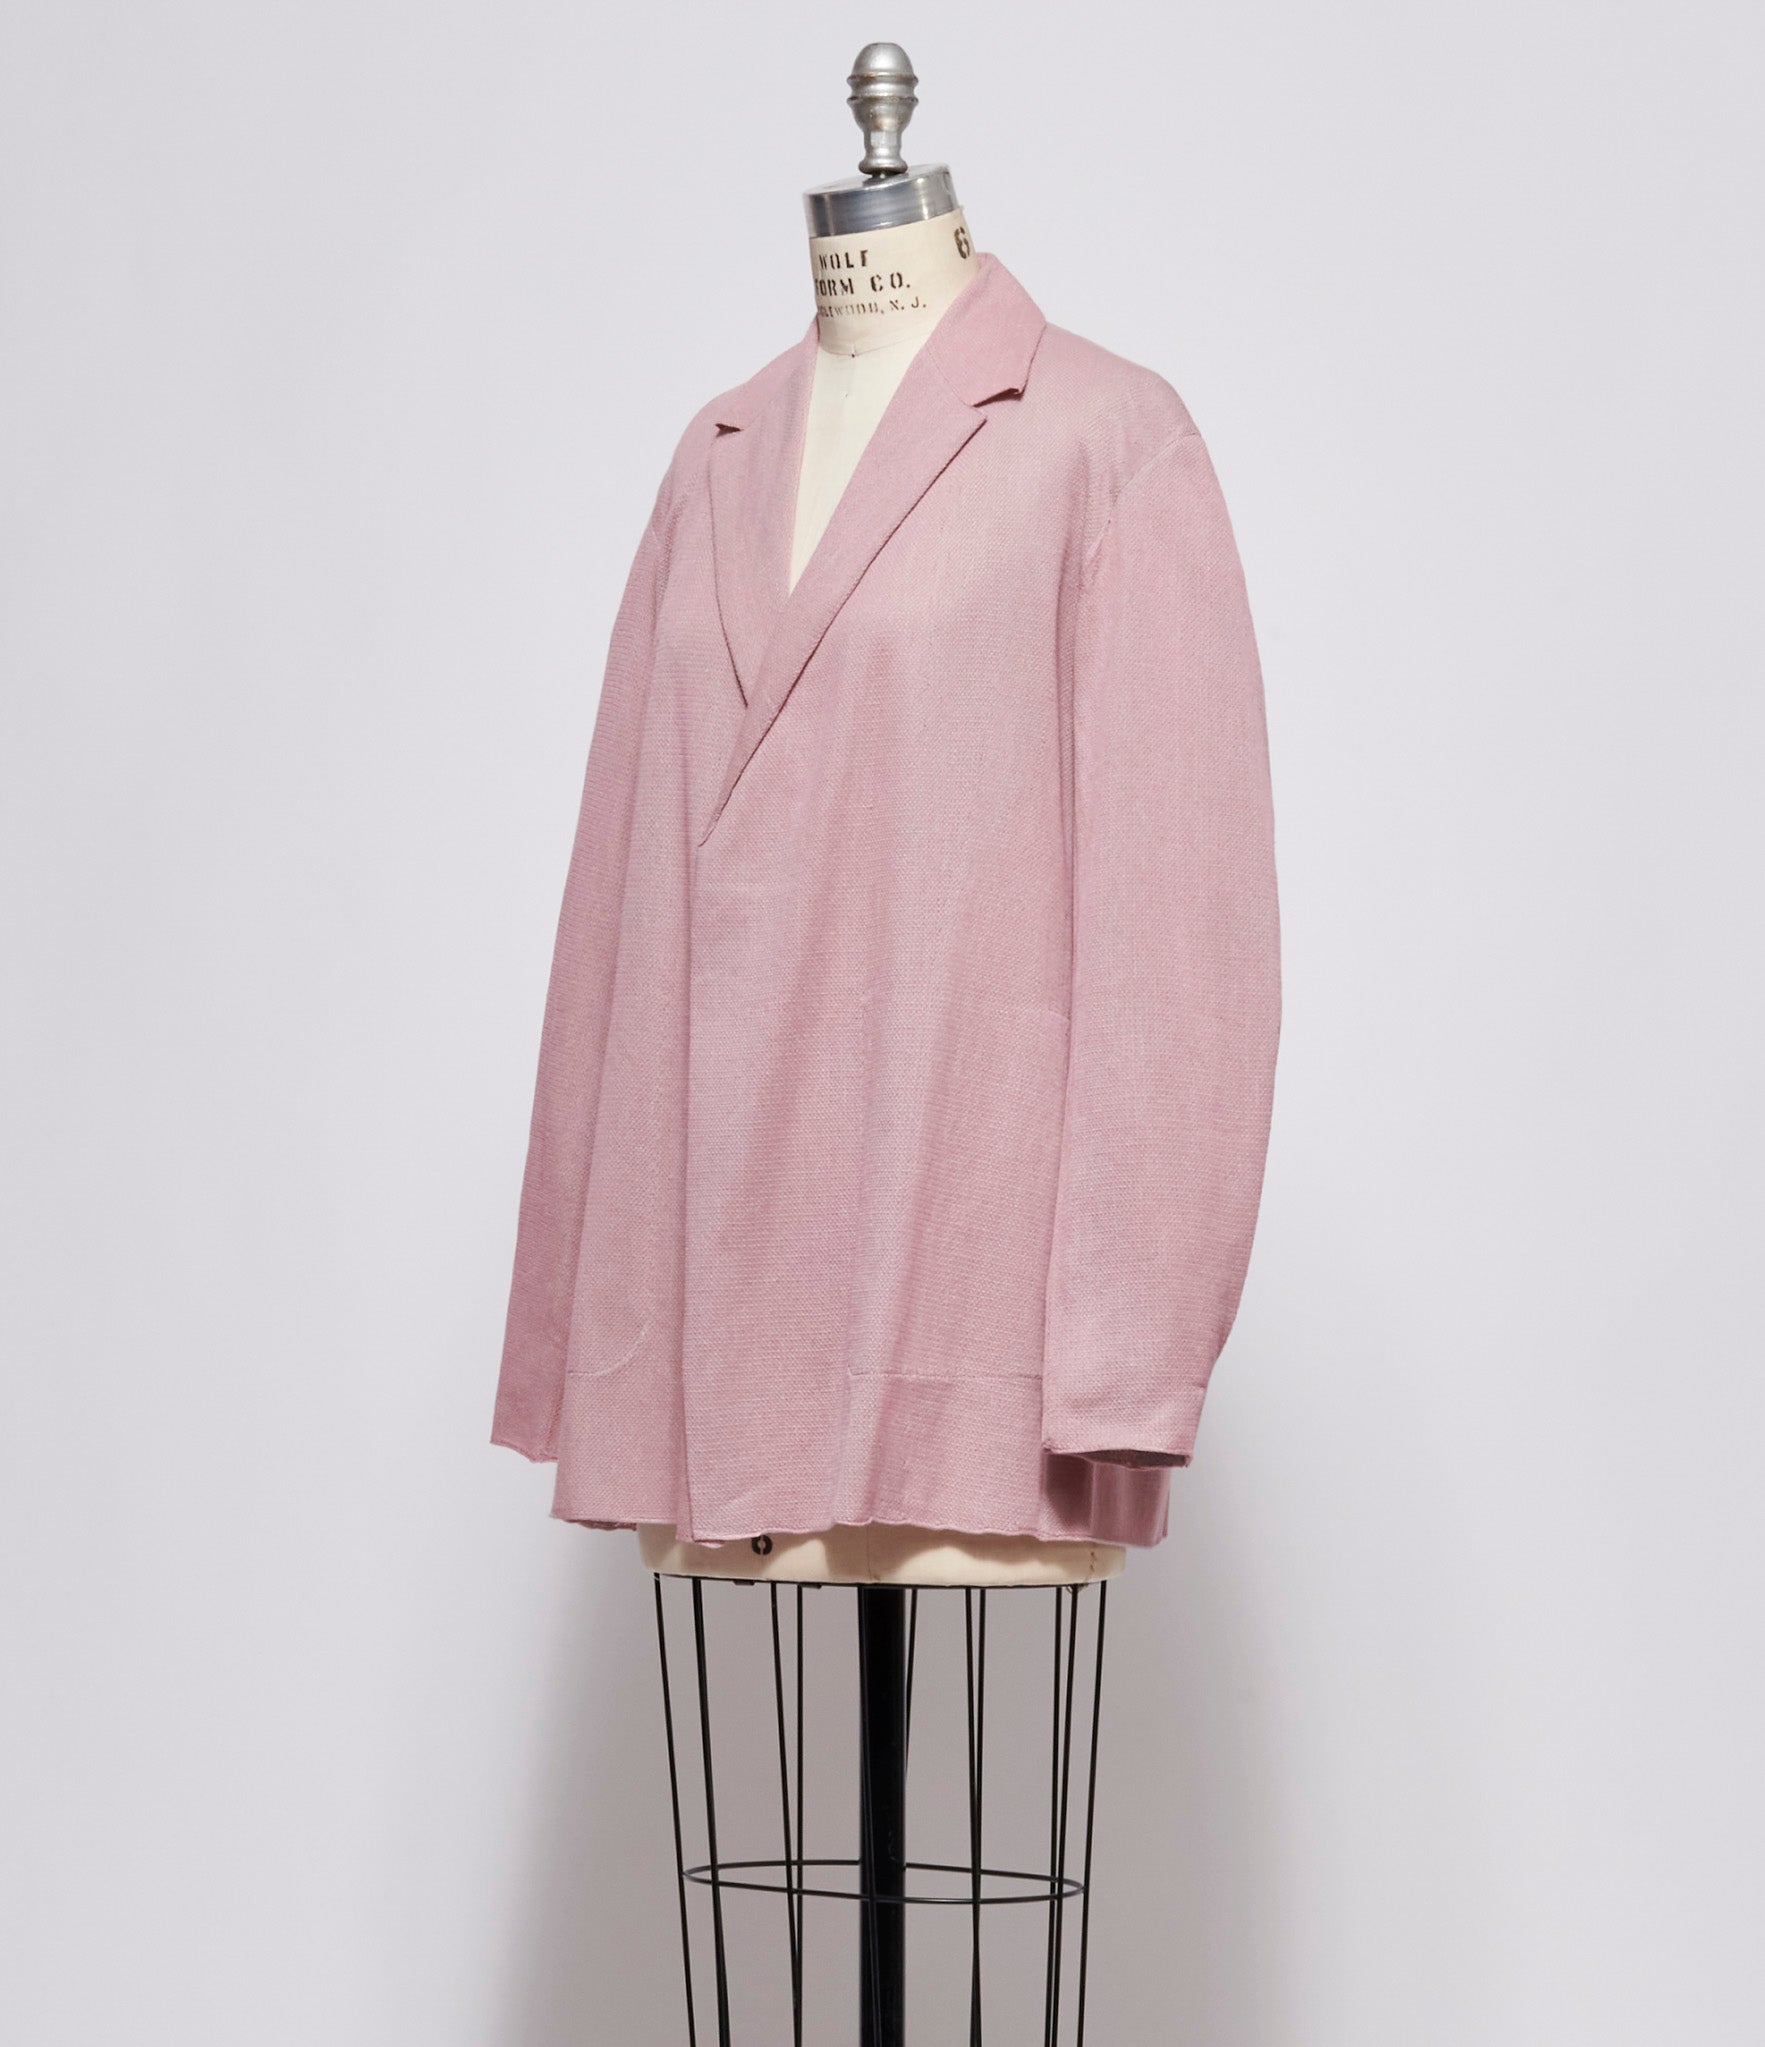 Boboutic Pink Jacket